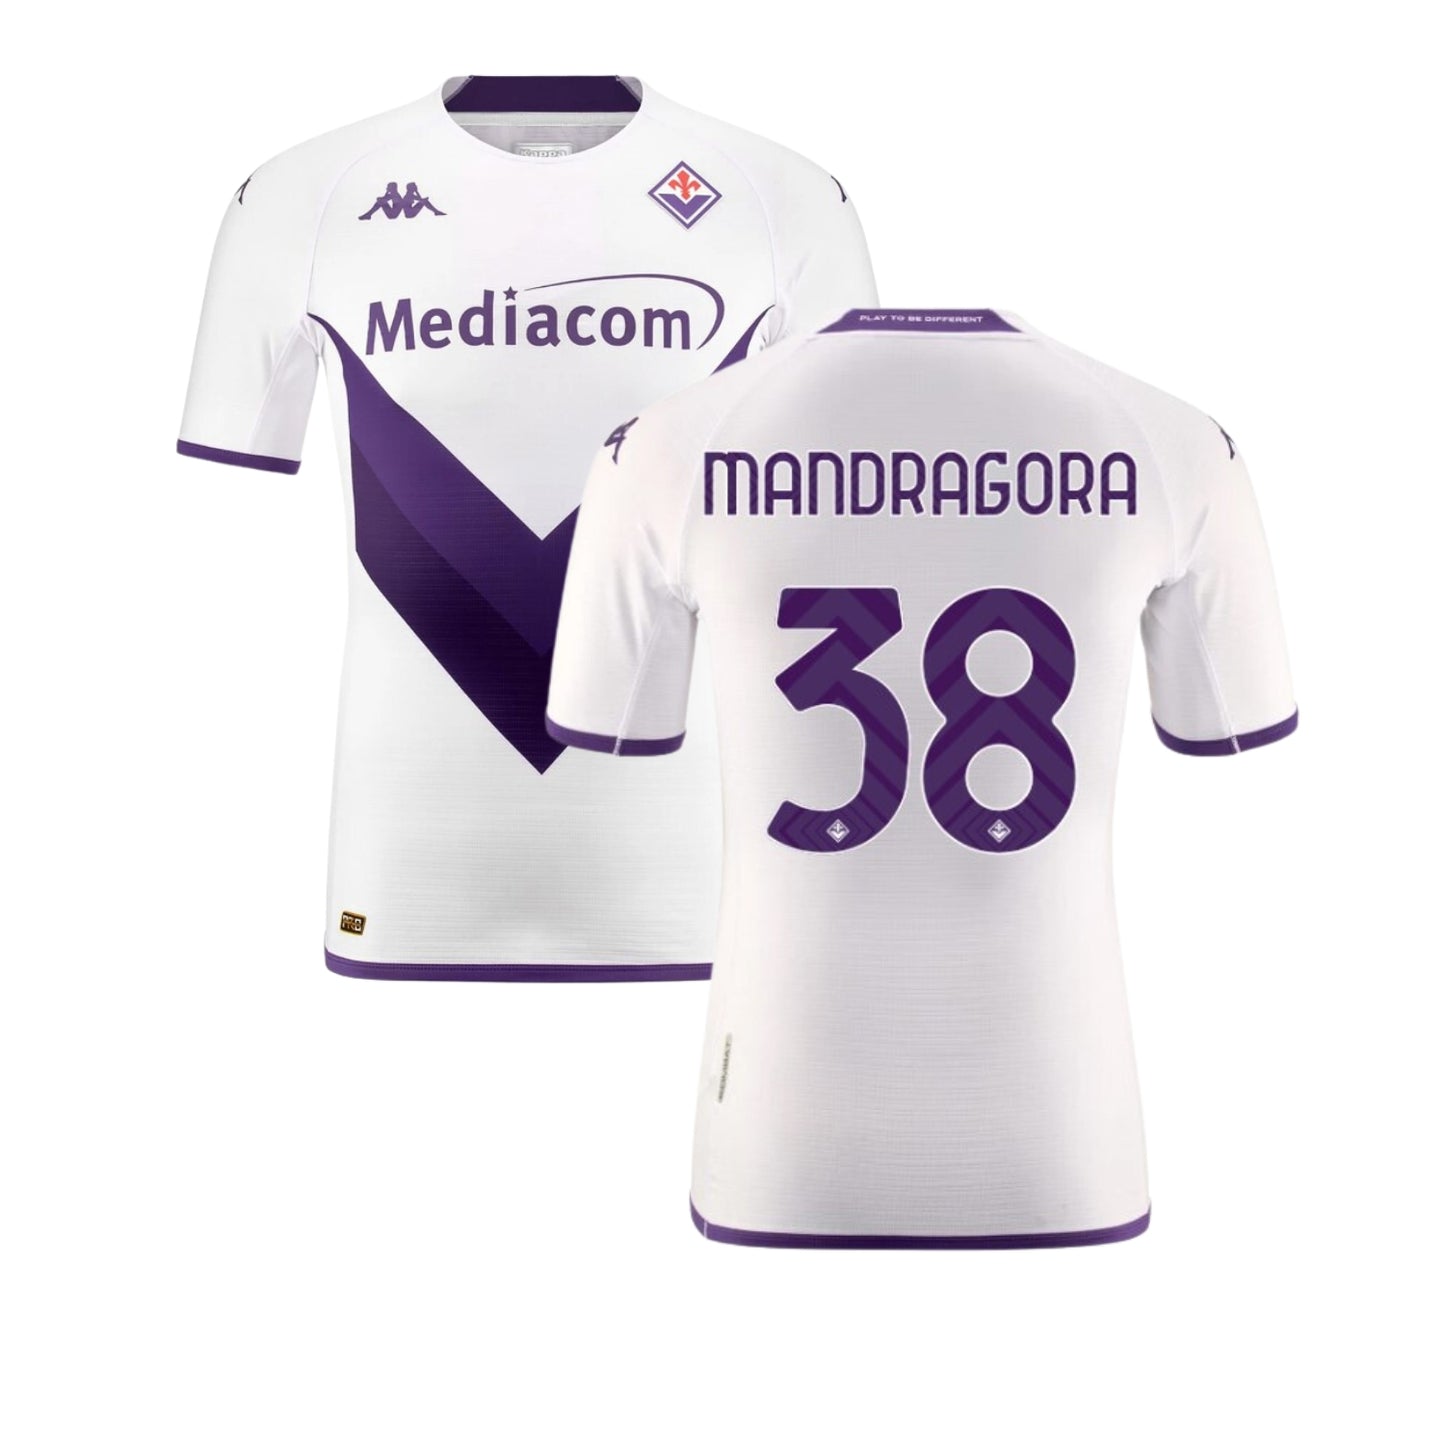 Rolando Mandragora ACF Fiorentina 38 Jersey